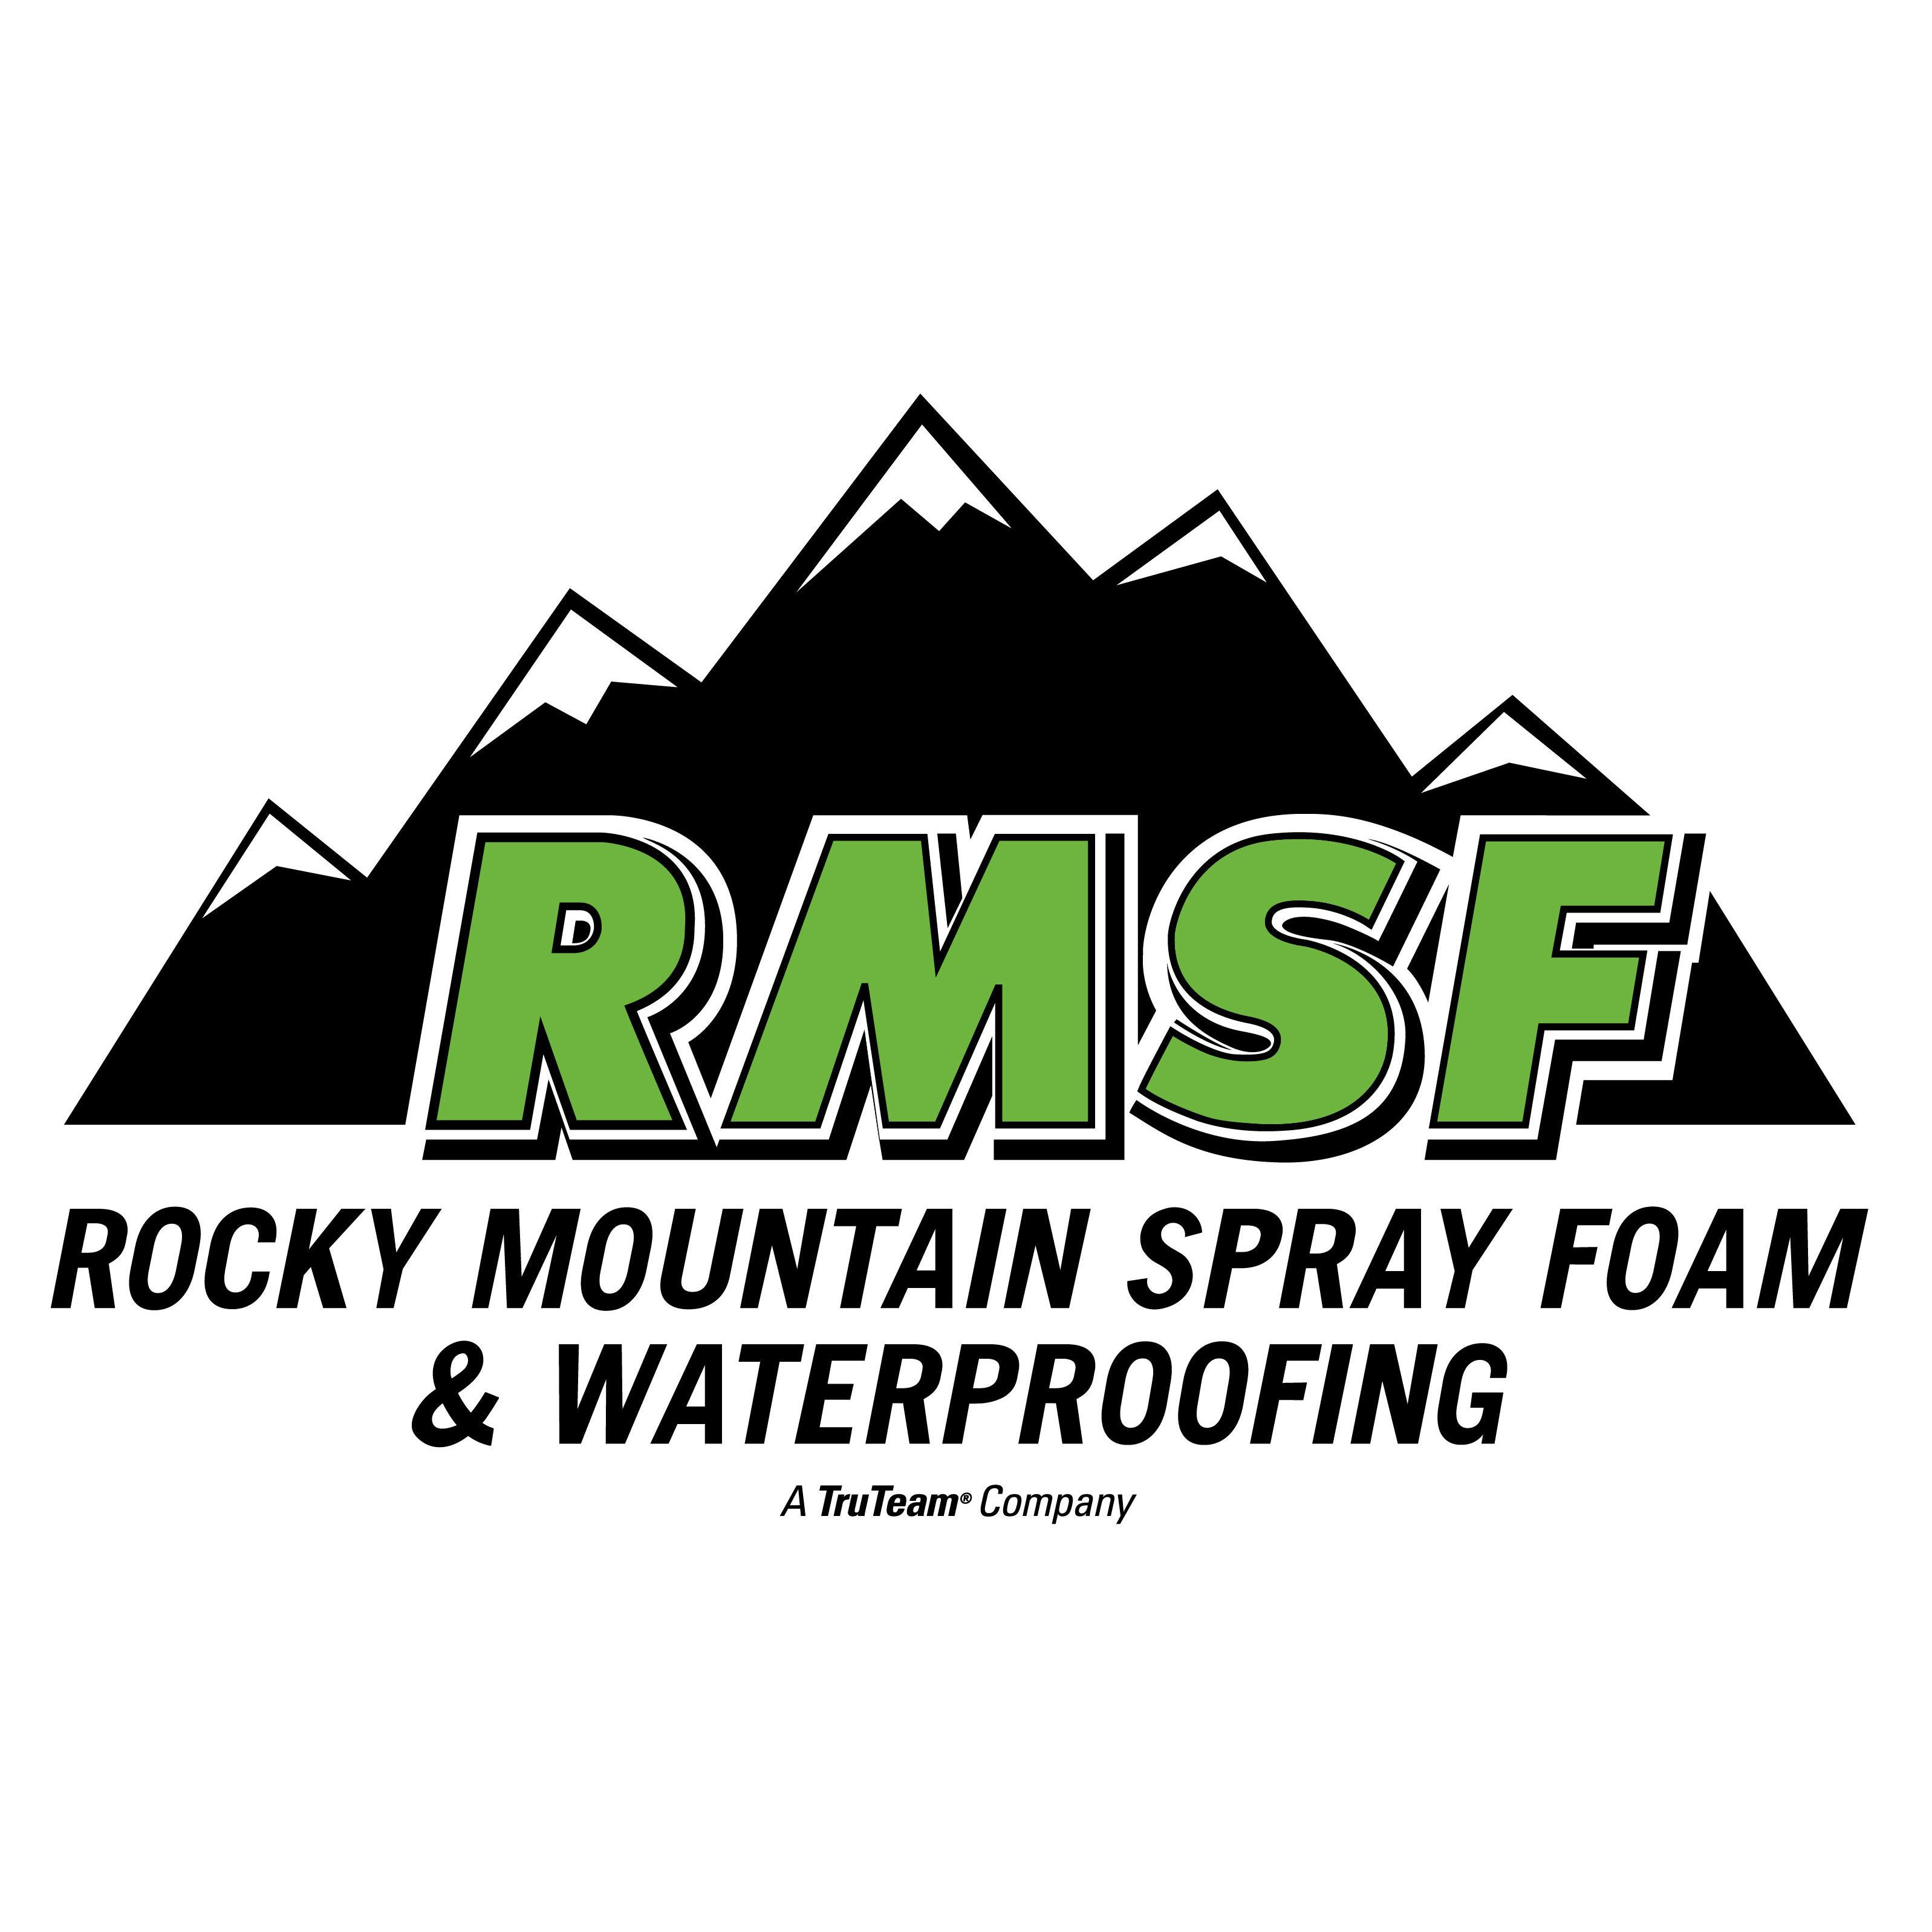 Rocky Mountain Spray Foam & Waterproofing